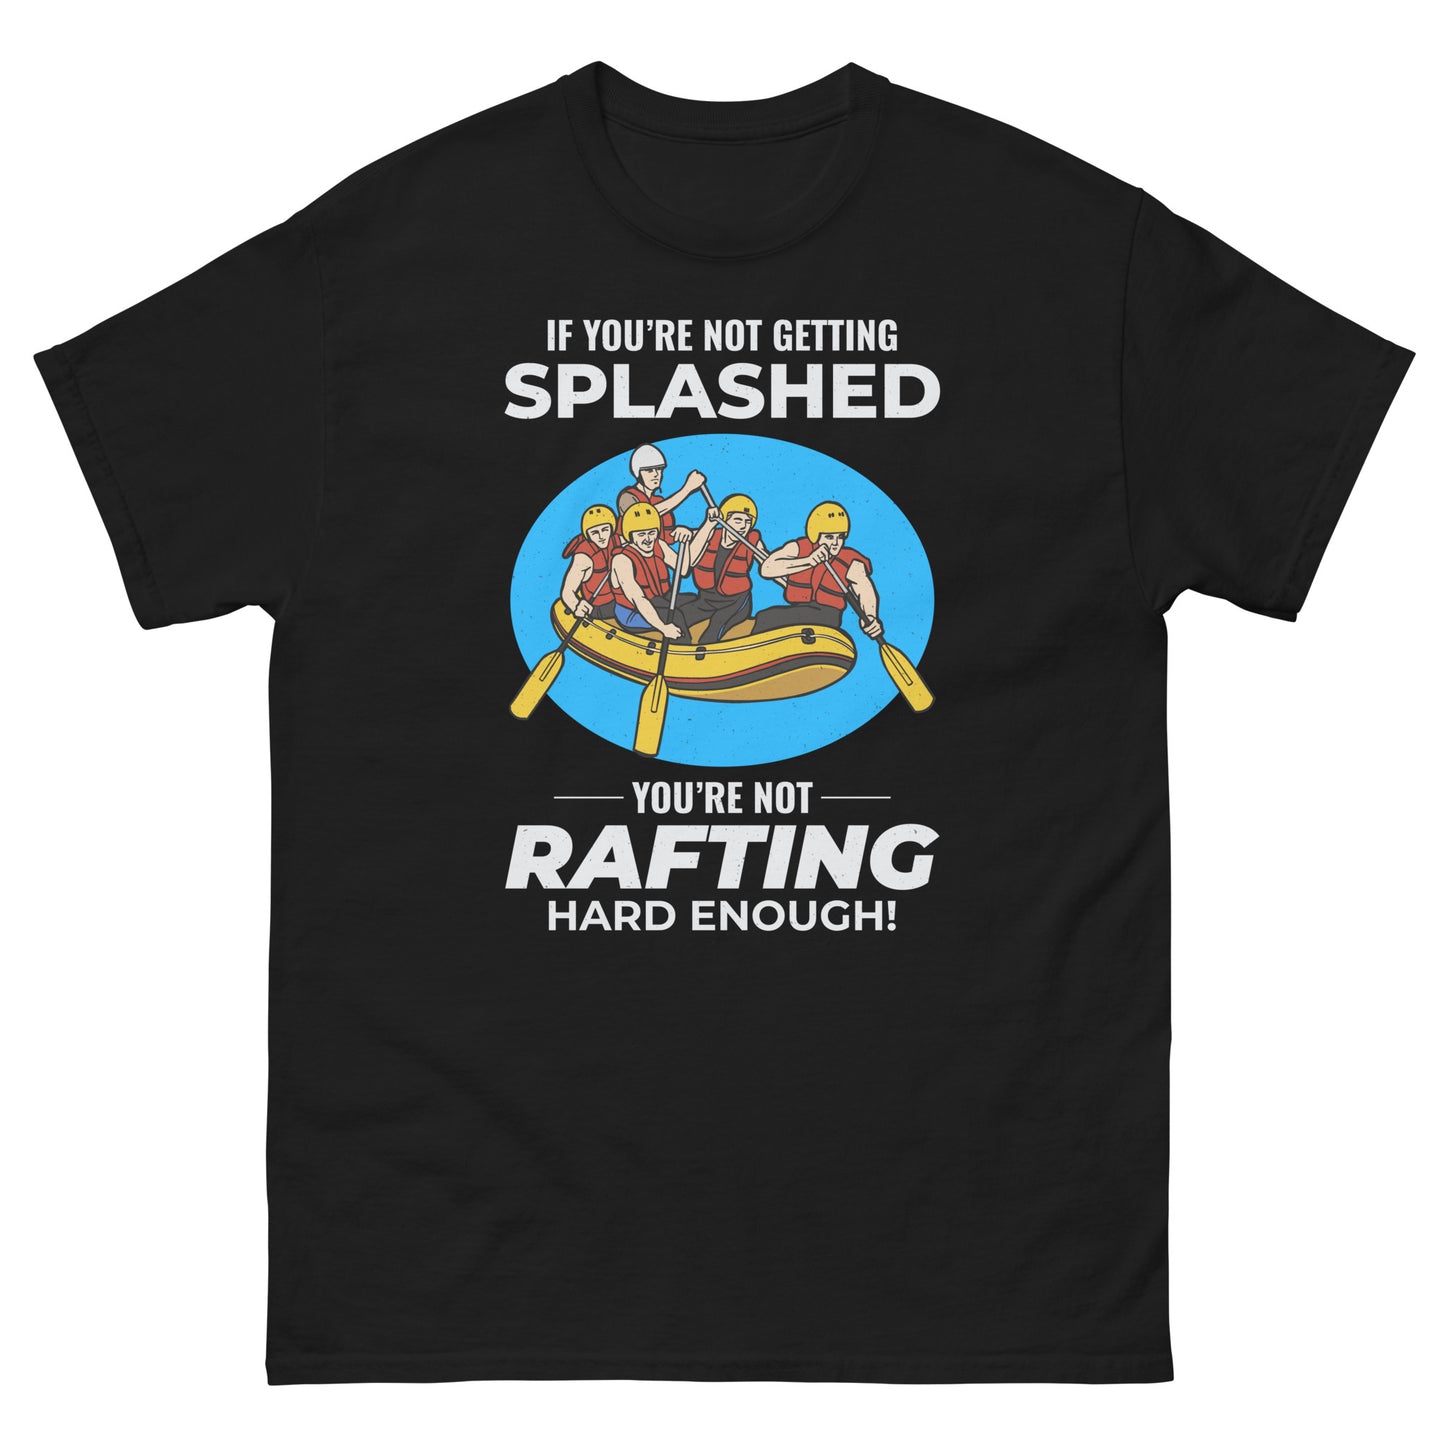 rafting shirt